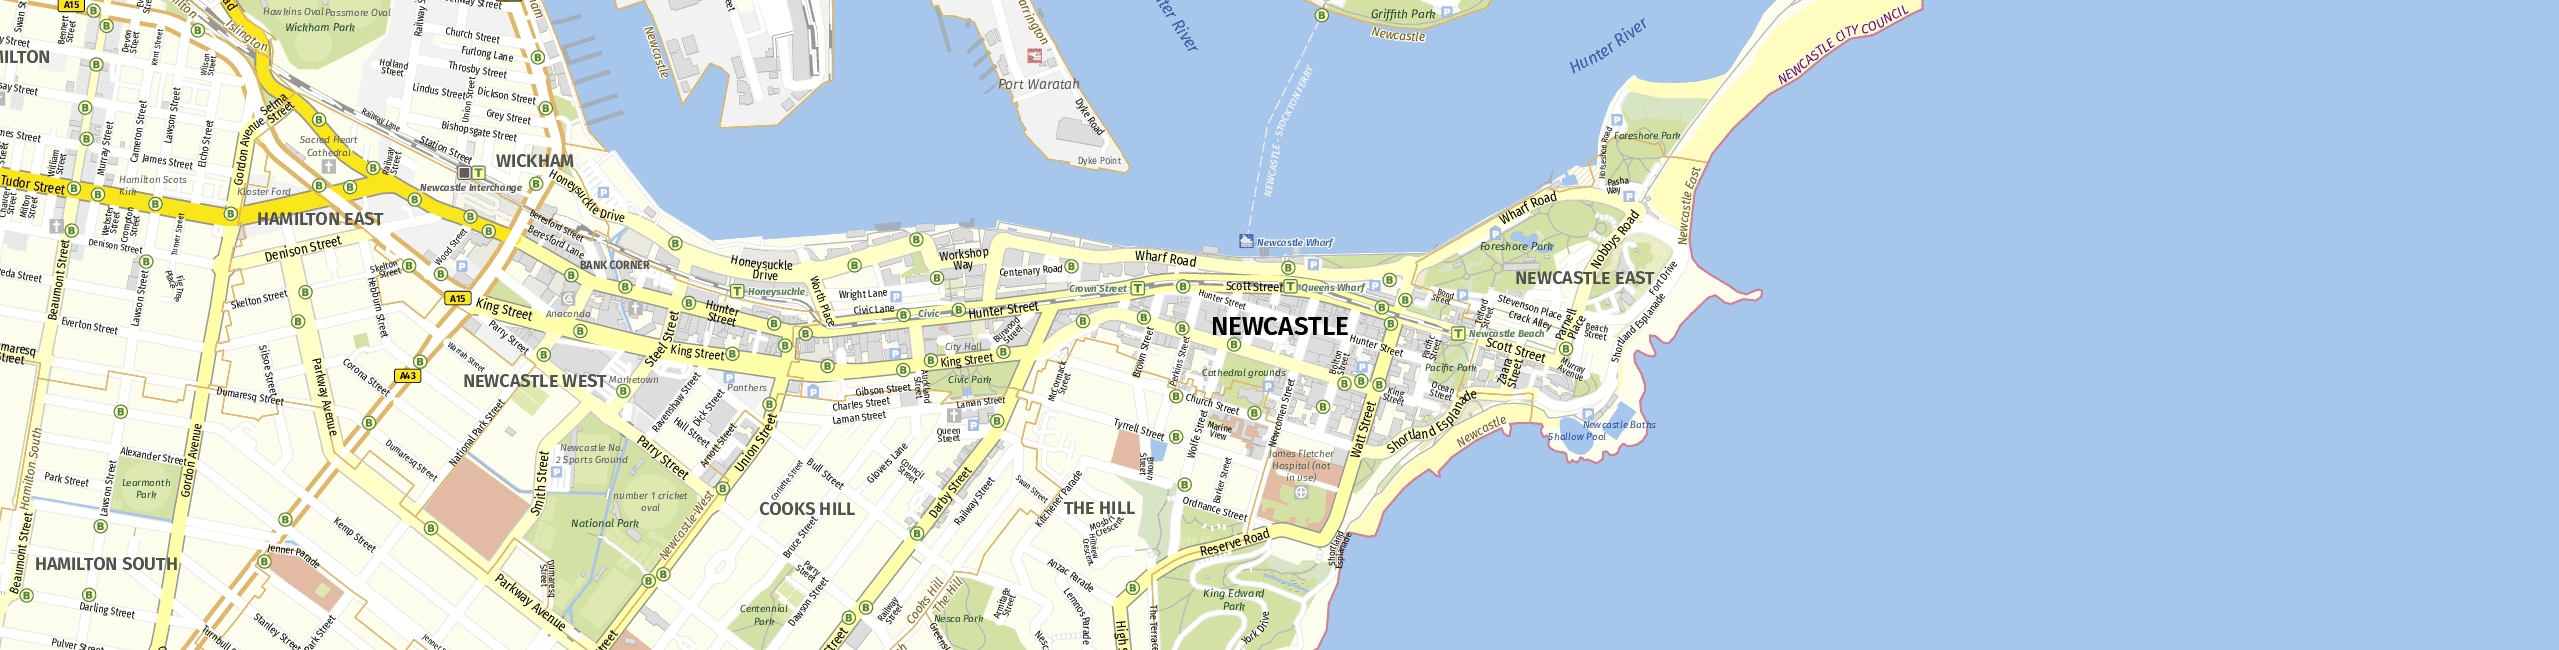 Stadtplan Newcastle zum Downloaden.